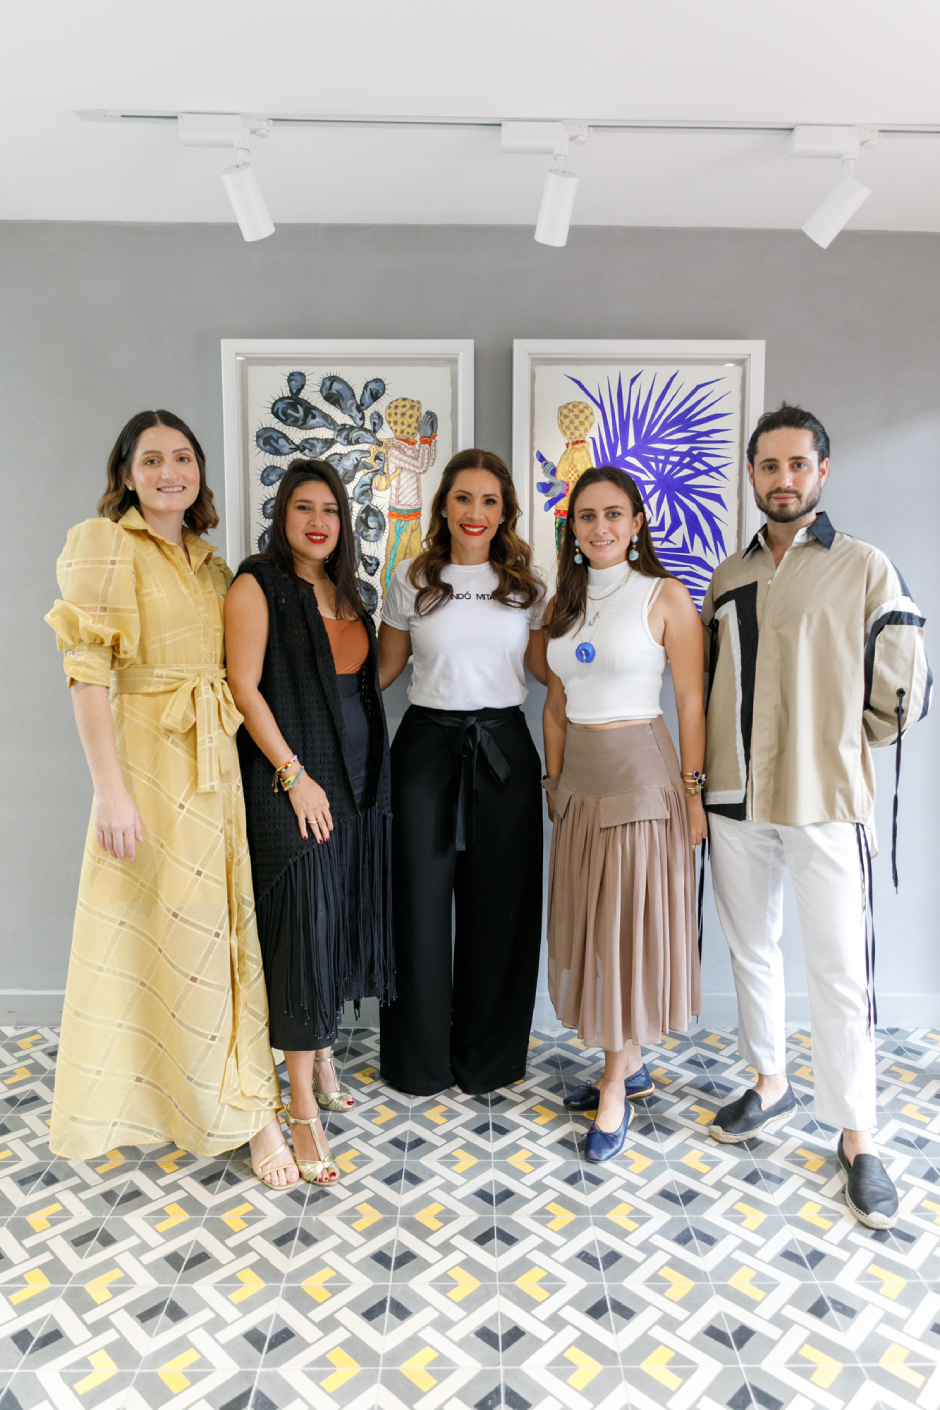 Indómita, la nueva casa de la moda y el arte hechos en RD